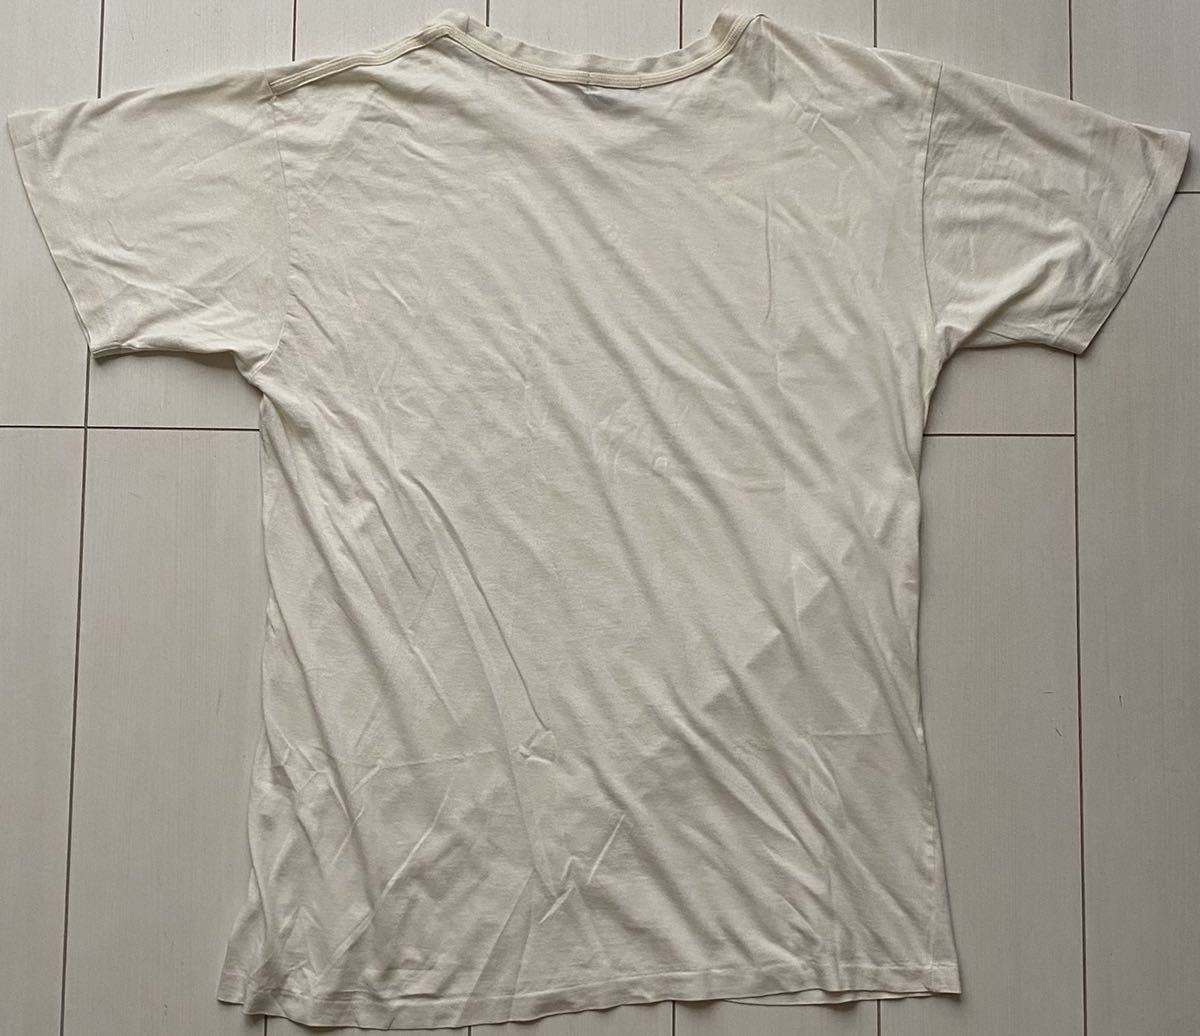 送料無料 希少 90s 1991年製 POLO ATHL DEPT SU 91 ラルフローレン ホワイト white 白 ロゴ tシャツ bear sportsman rrl country 92 93 XL